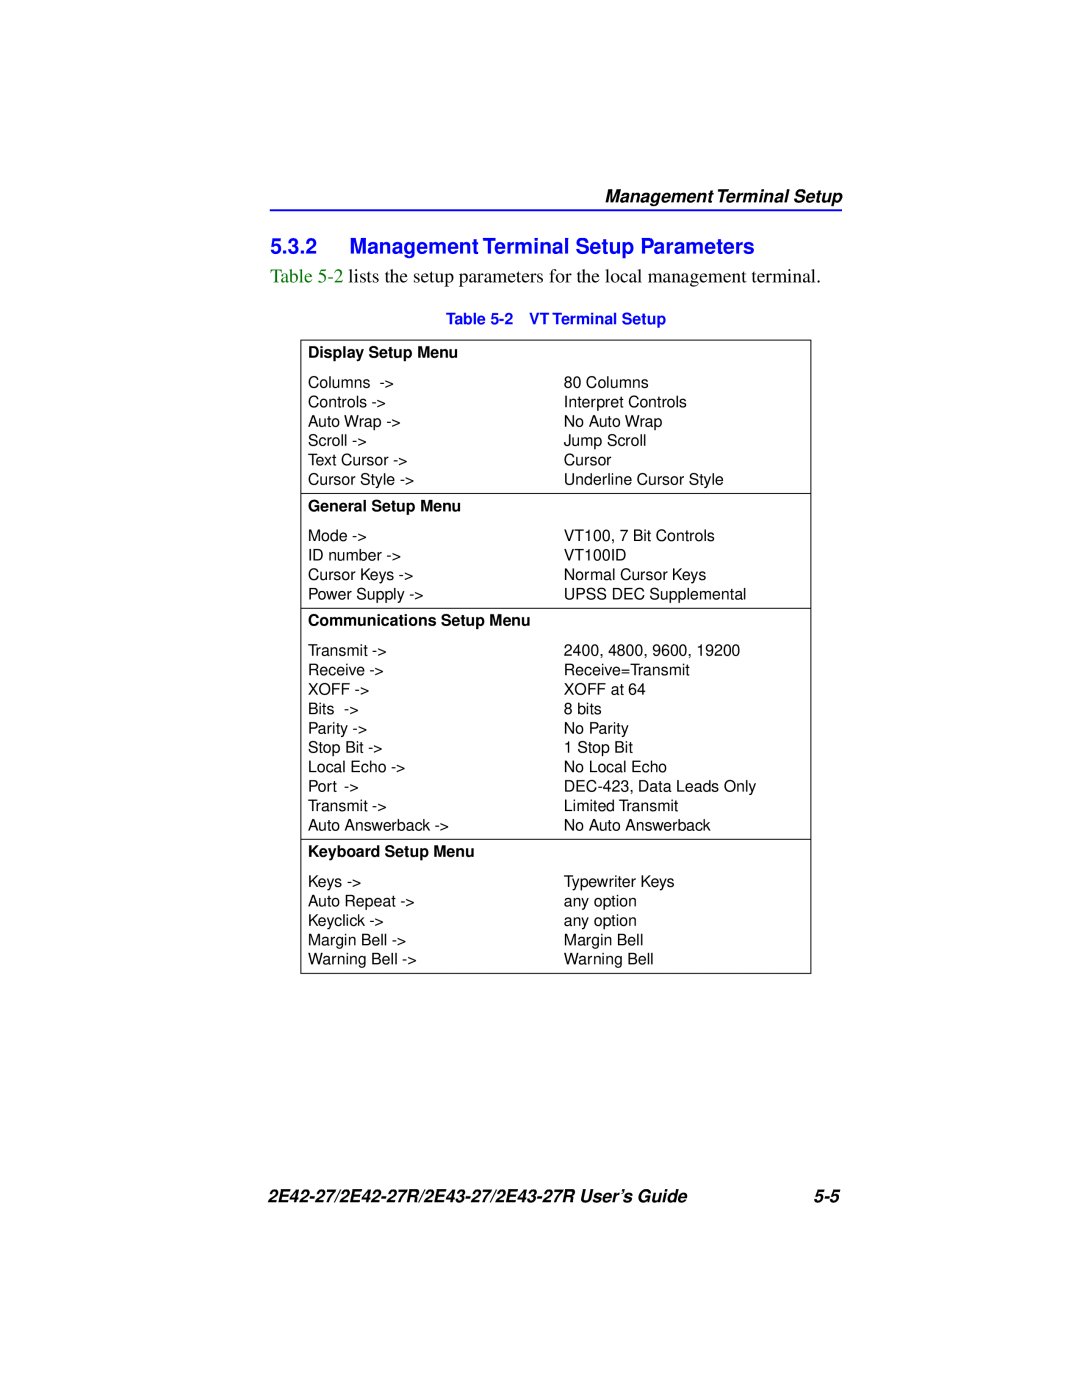 Cabletron Systems manual Management Terminal Setup Parameters, 2E42-27/2E42-27R/2E43-27/2E43-27R User’s Guide 